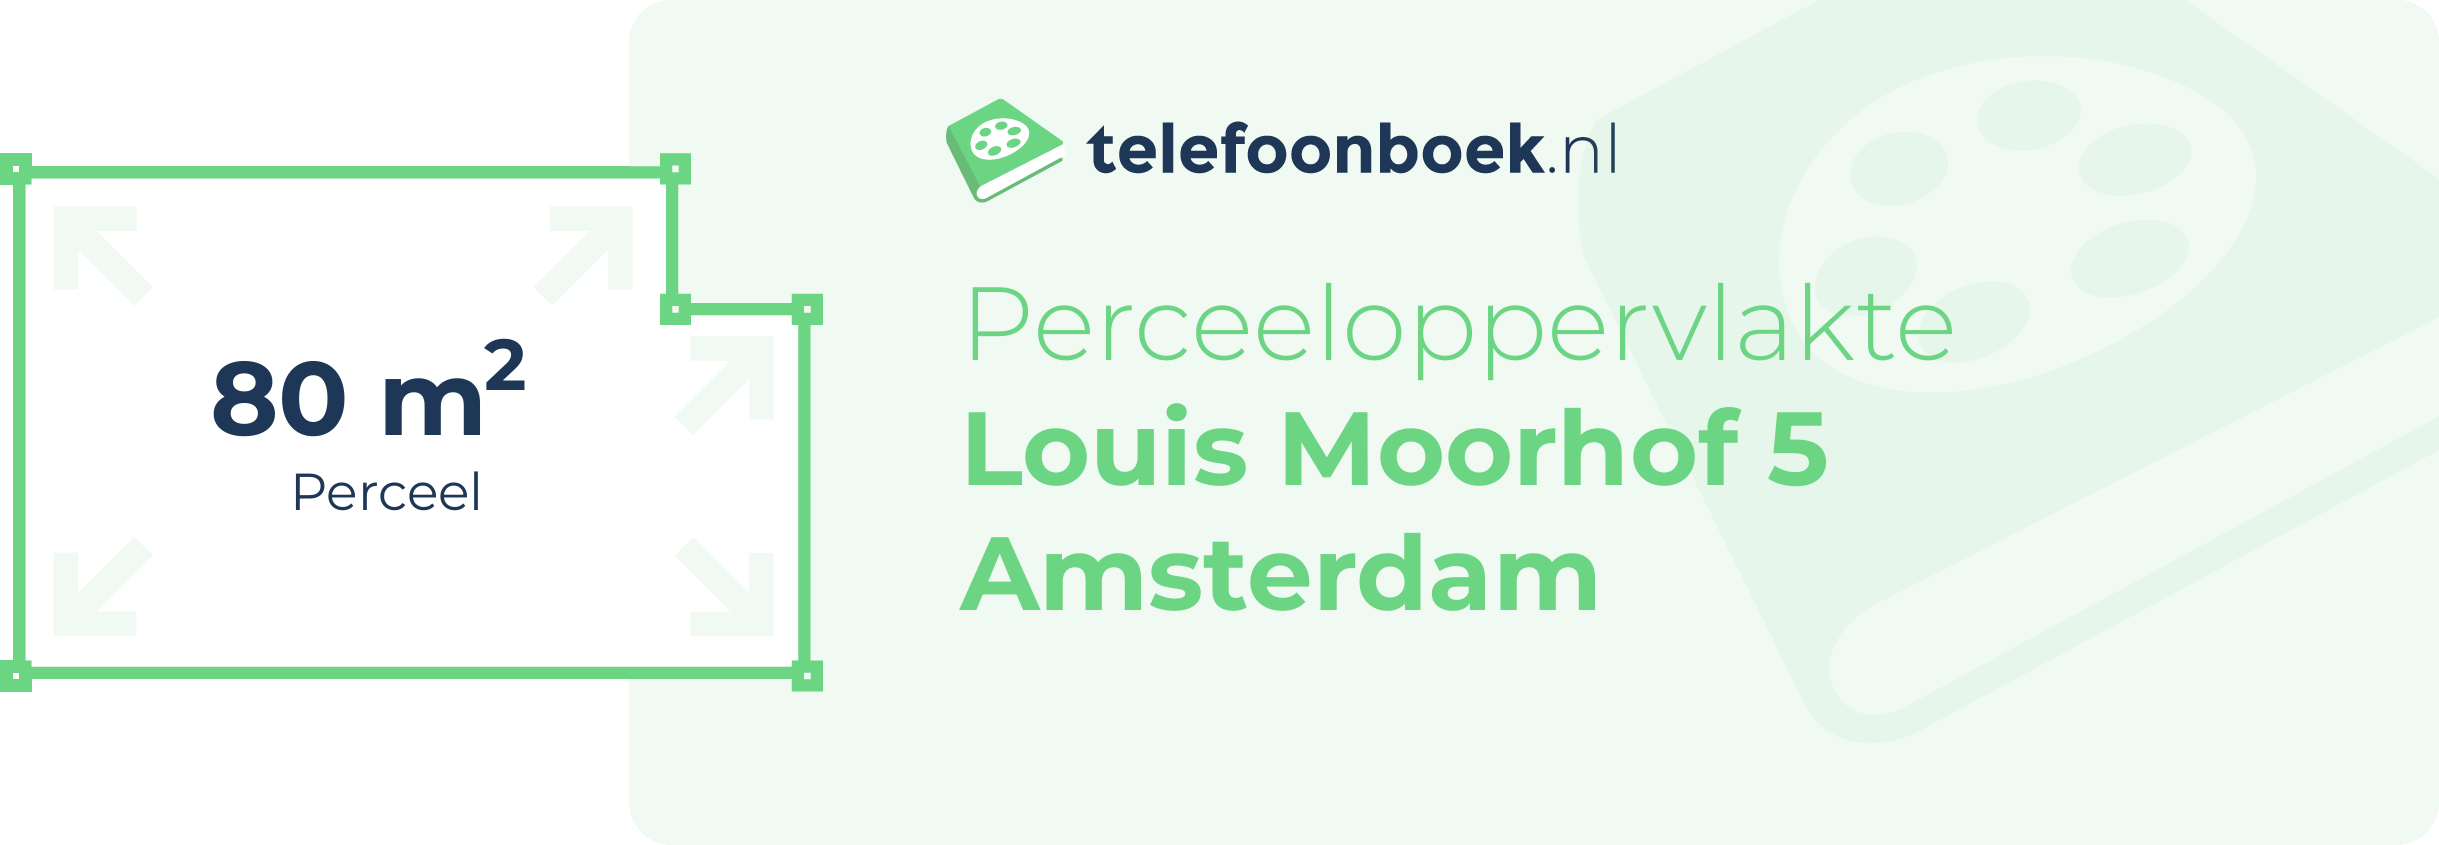 Perceeloppervlakte Louis Moorhof 5 Amsterdam